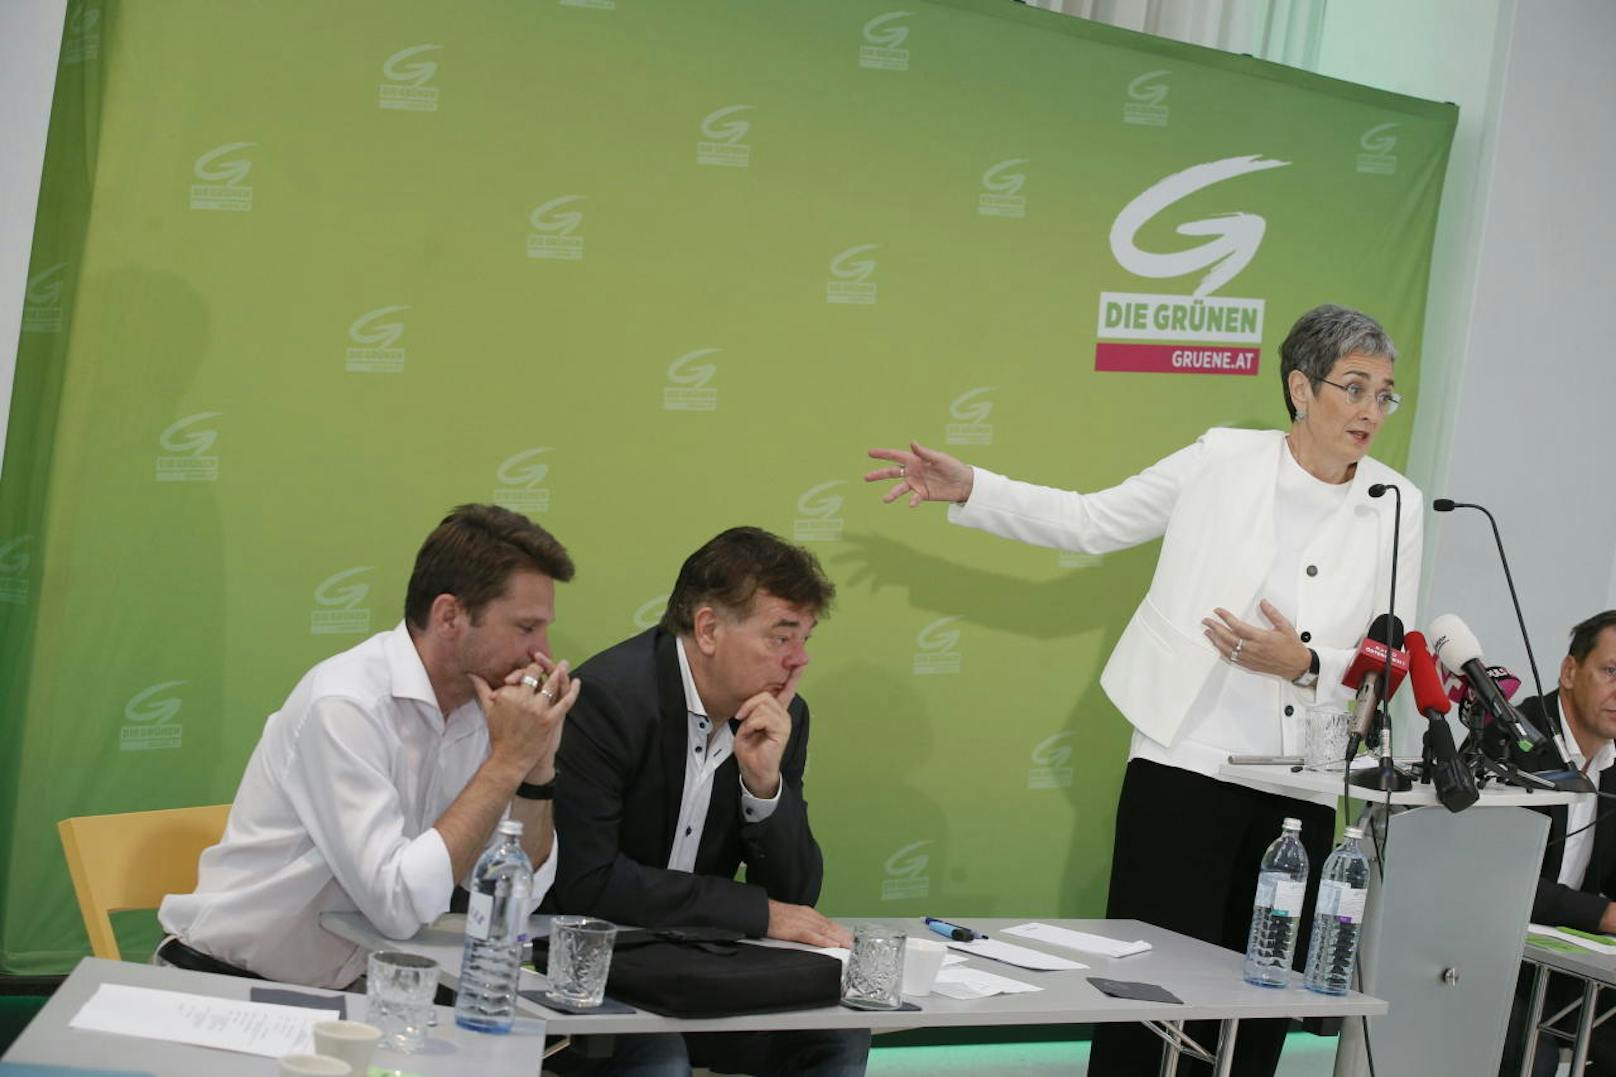 Die Grünen Werner Kogler (Mitte), Ulrike Lunacek (re.) und Albert Steinhauser (li.) beim erweiterten Bundesvorstand am 18. Juli 2017 in Wien